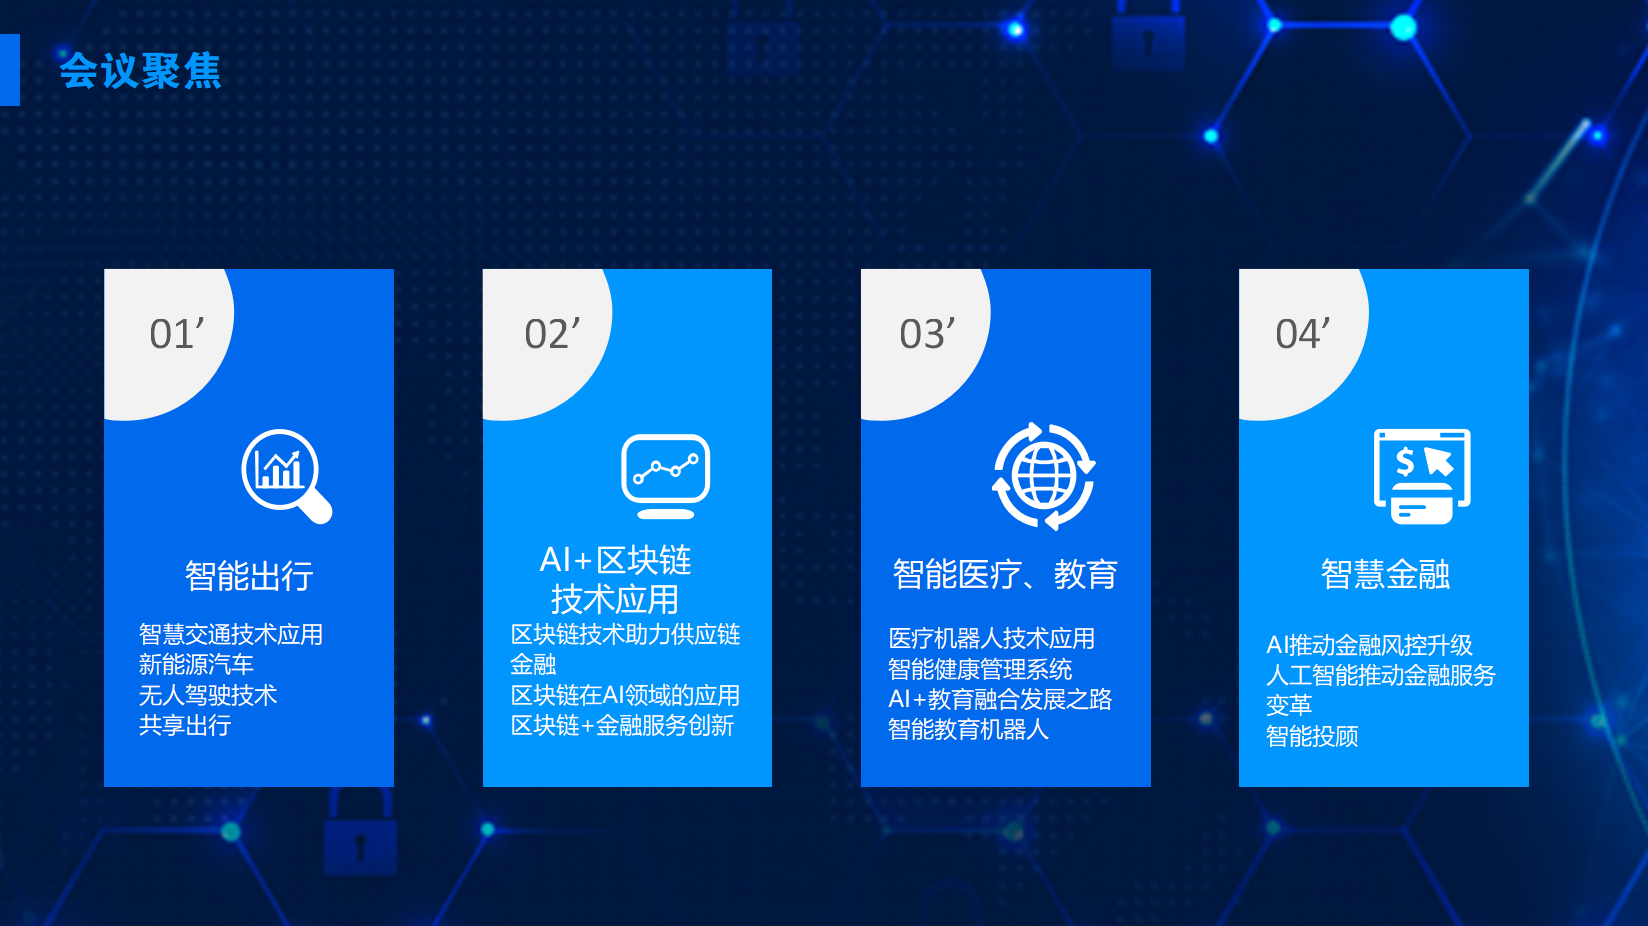 2018第二届中国人工智能国际峰会（CBECAI）